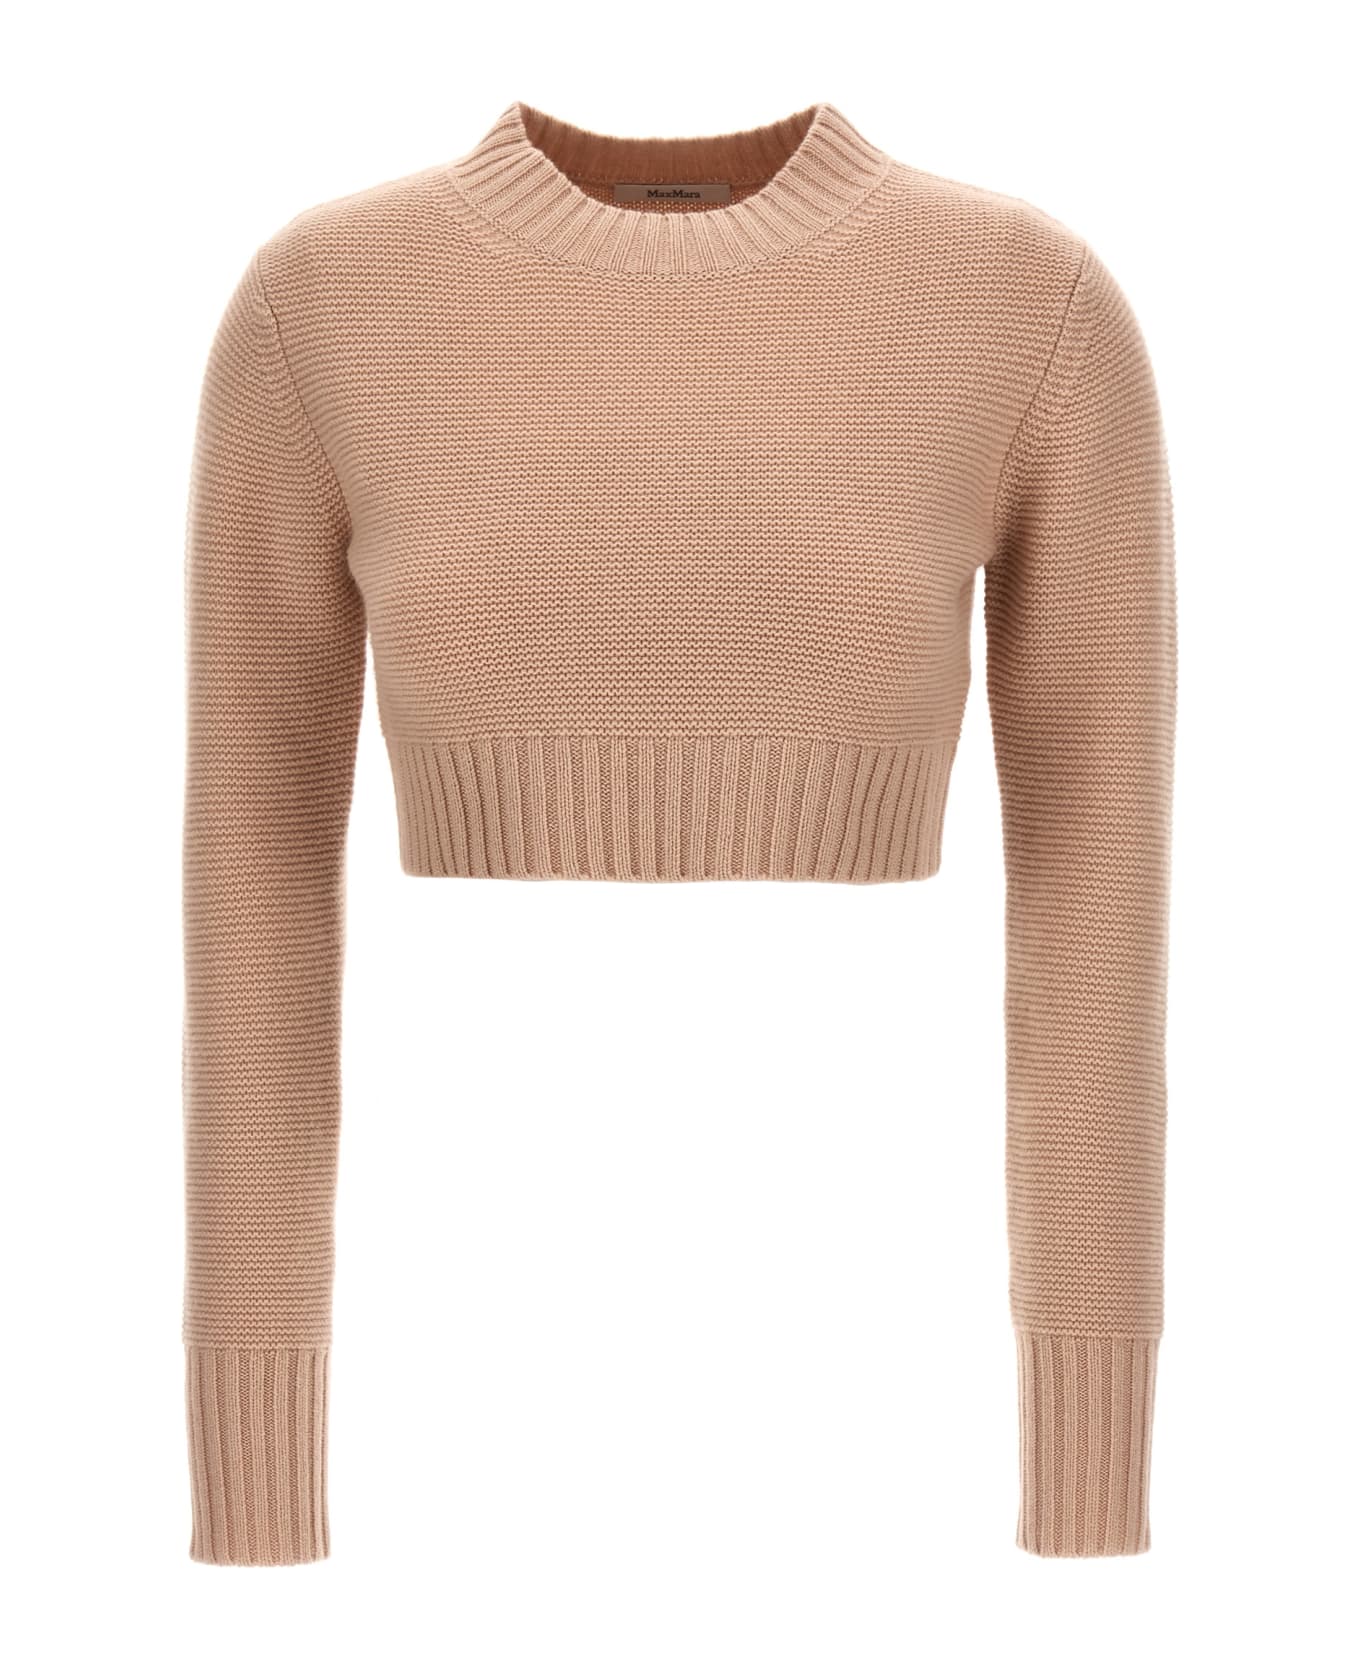 Max Mara 'kaya' Cropped Sweater - Pink